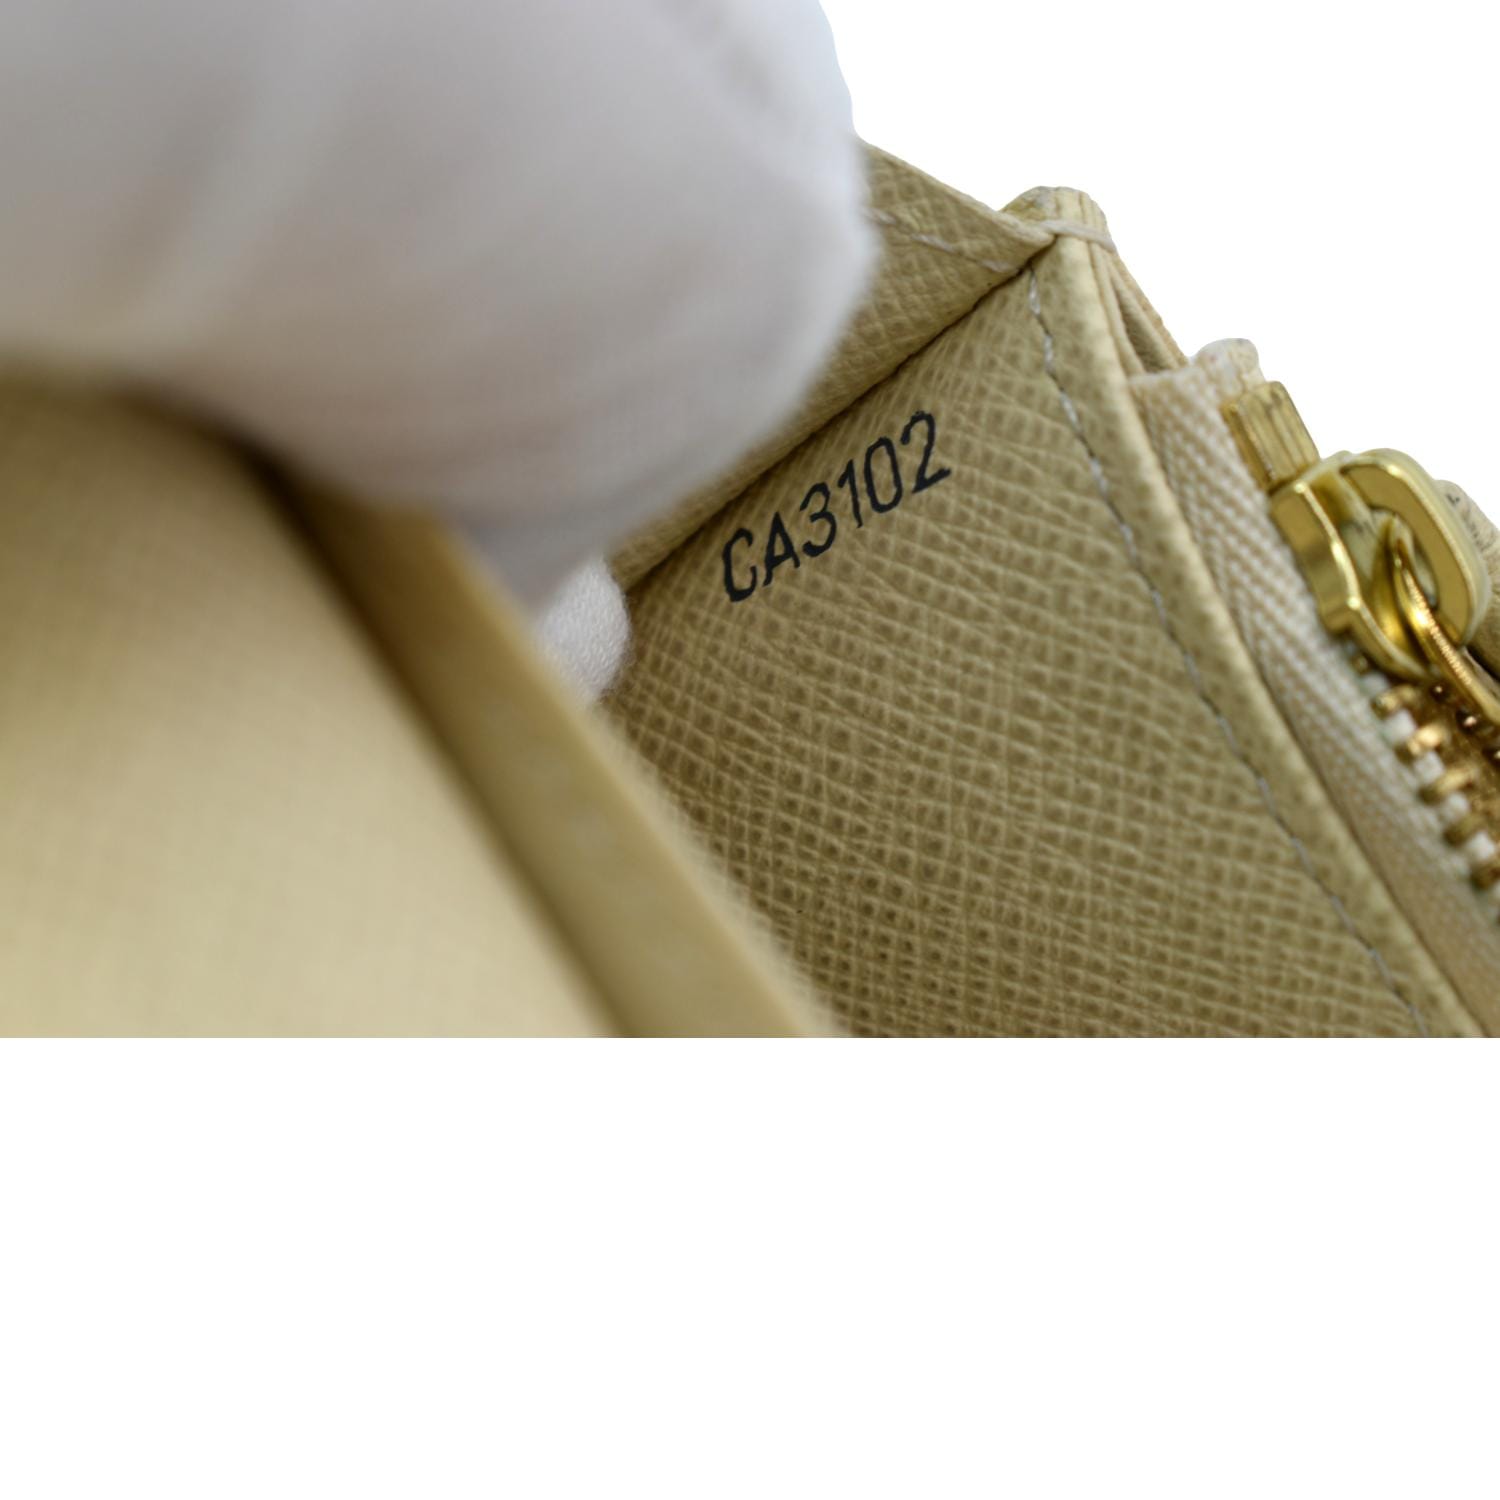 Louis Vuitton Damier Azur Emilie Wallet. Made in Spain. - Canon E